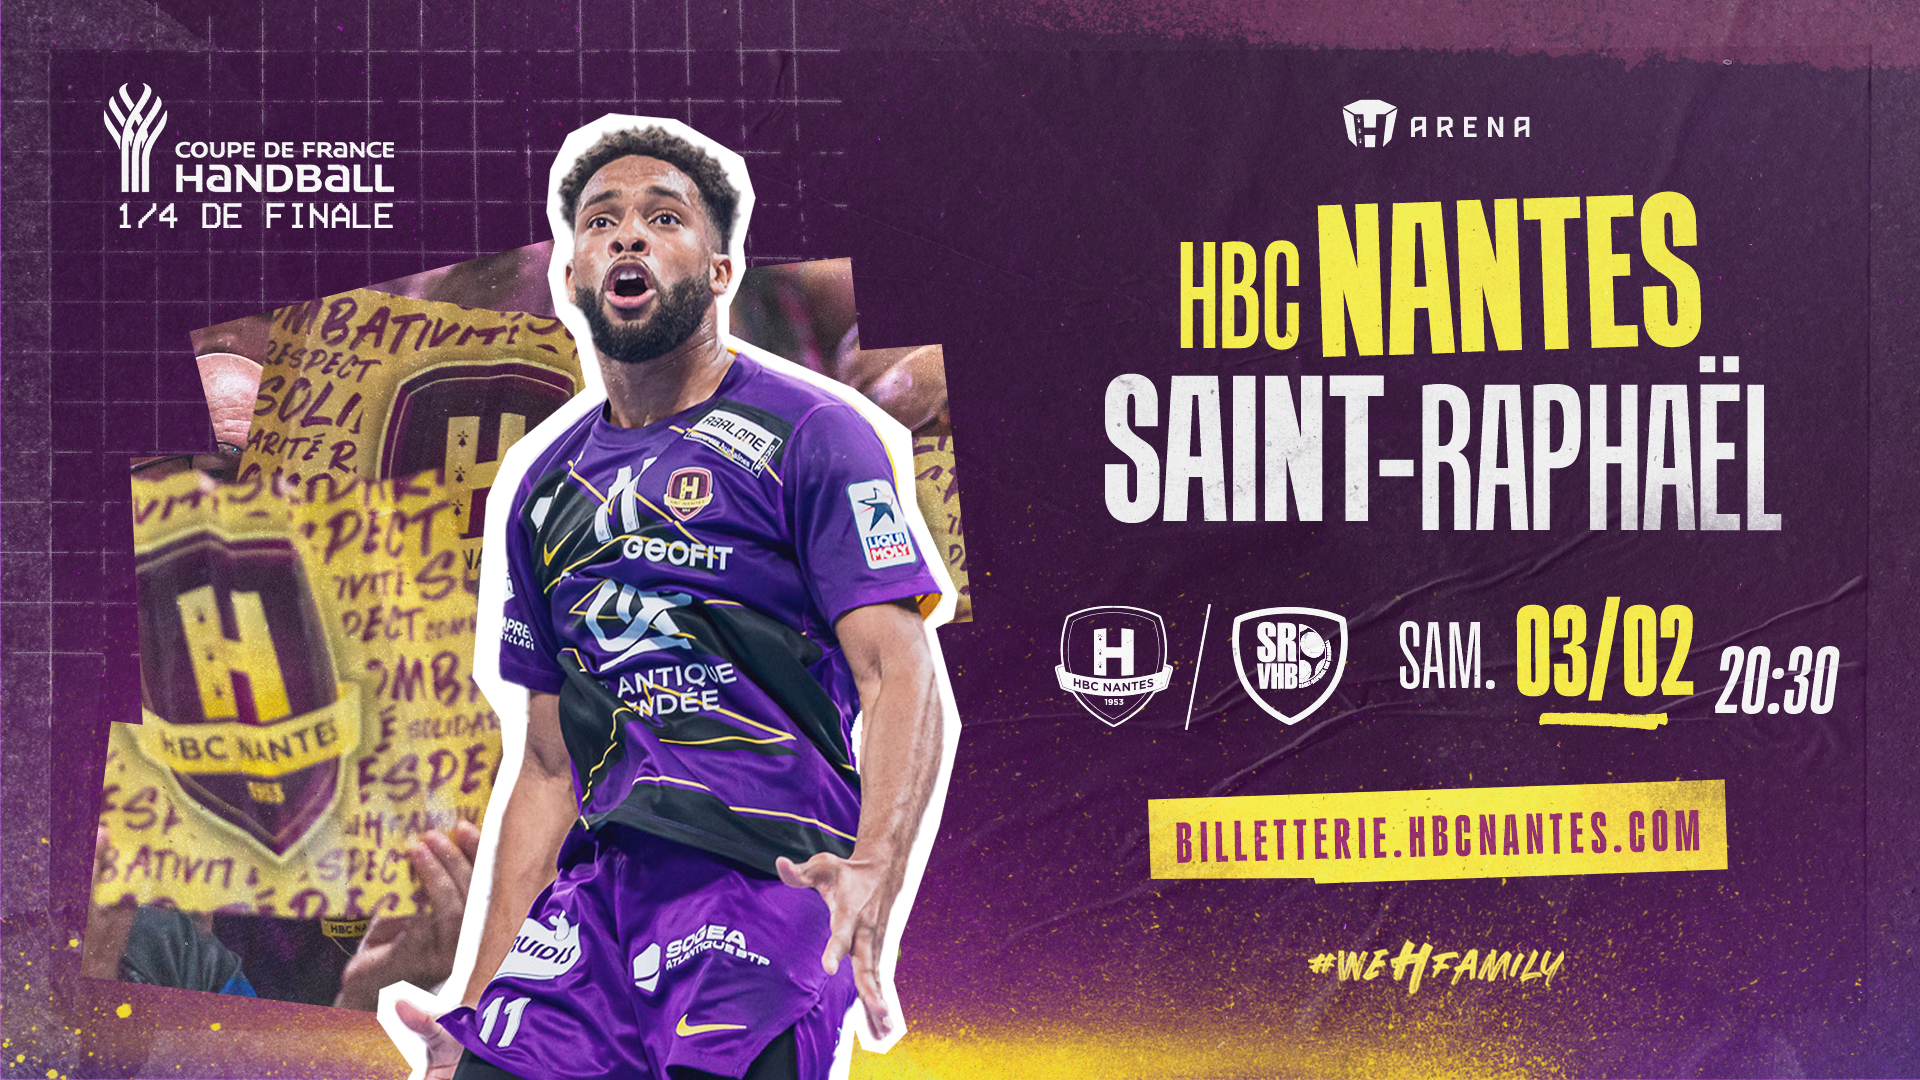 HBC Nantes - Saint-Raphaël (CDF) : Infos pratiques